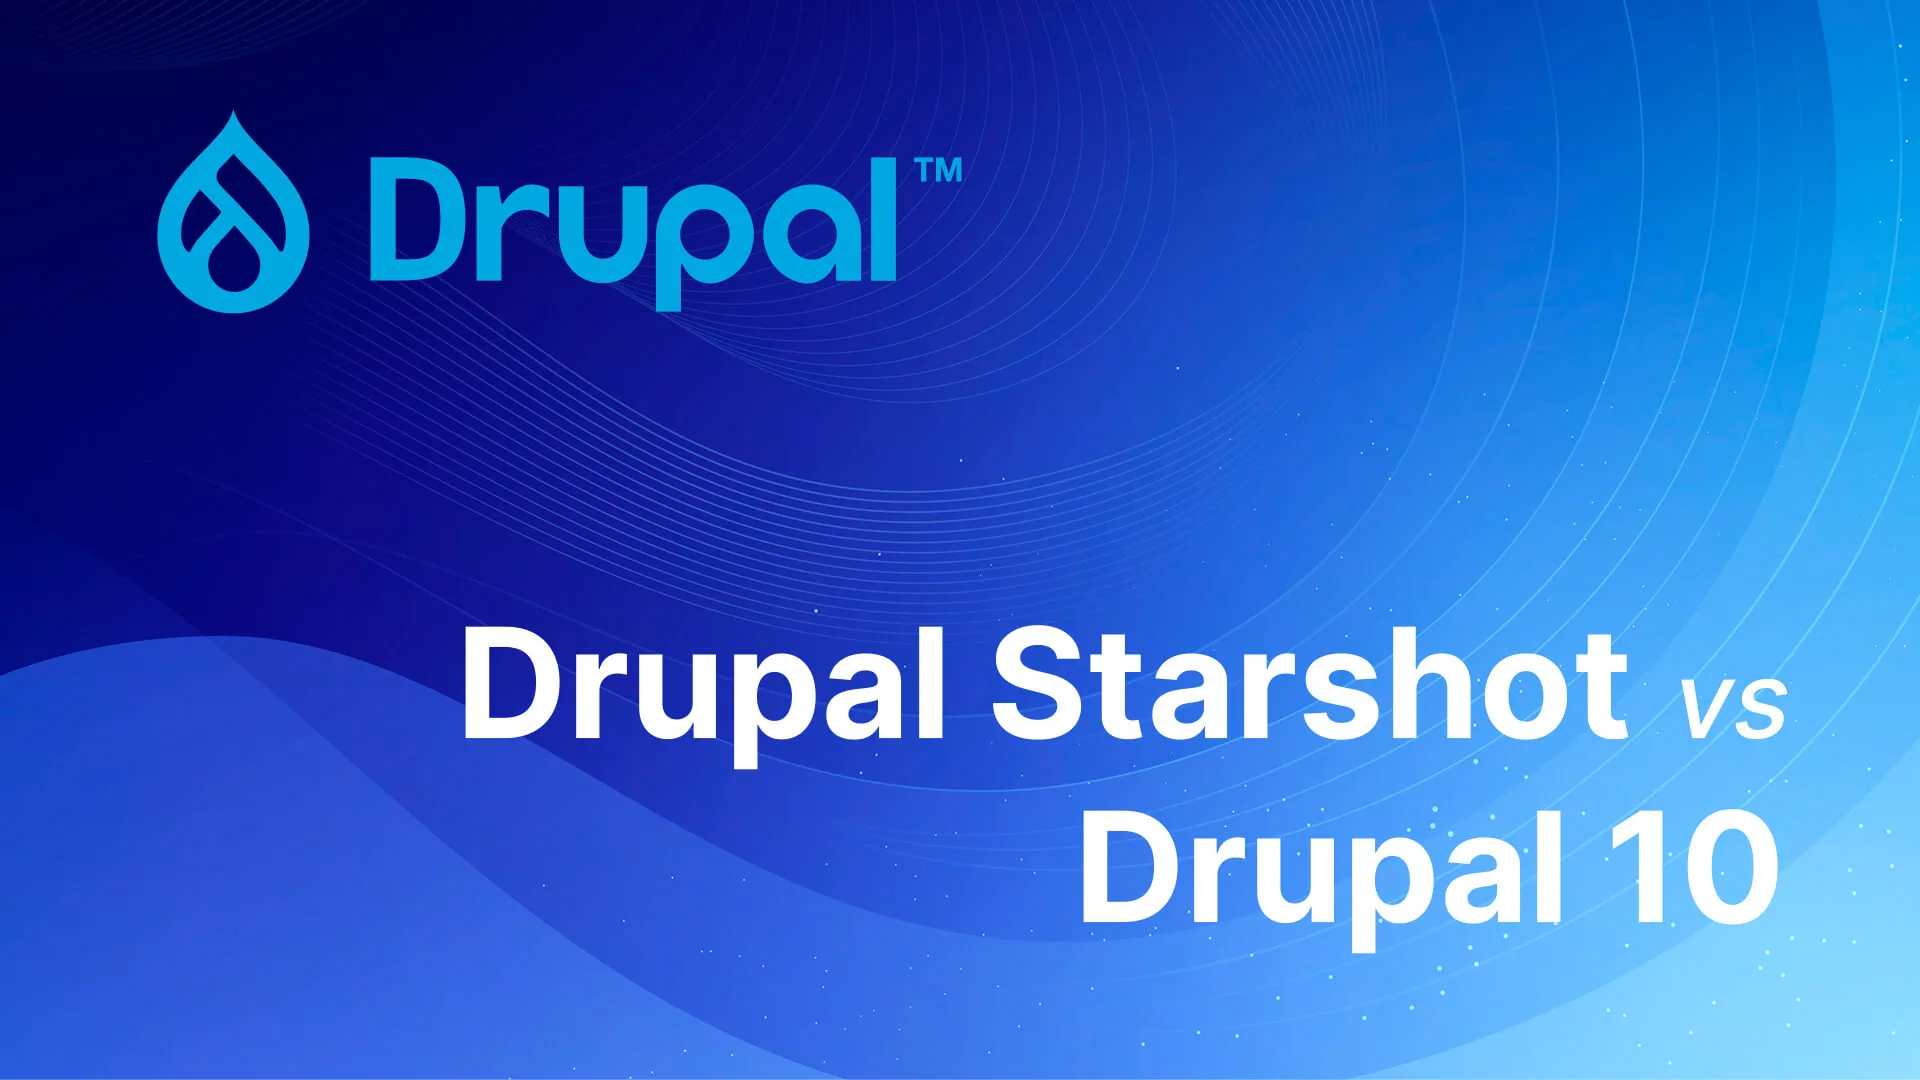 Drupal Starshot vs Drupal 10